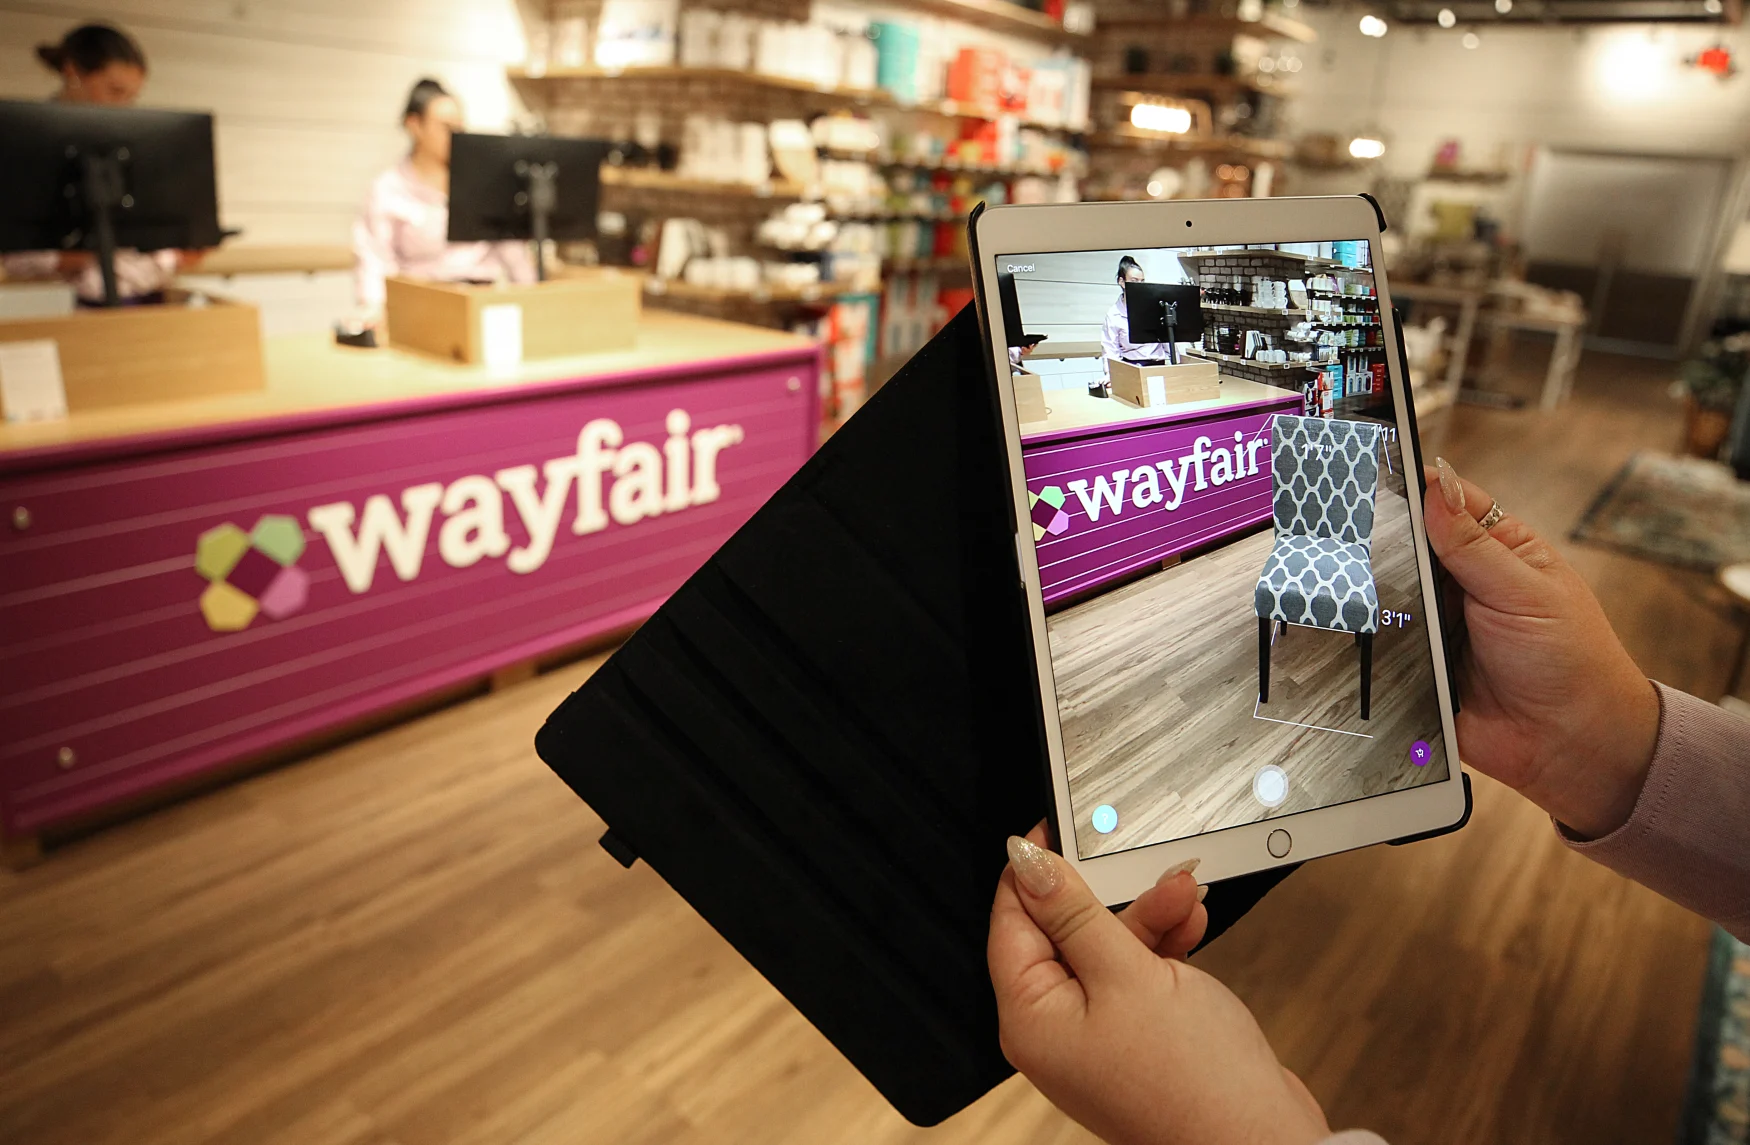 ناتيك ، ماساتشوستس - 20 أغسطس: تم عرض تطبيق الواقع الافتراضي في أول متجر لشركة Wayfair في Natick Mall في Natick ، ​​MA في 20 أغسطس 2019. يمكن للمتسوقين ارتداء سماعات رأس للواقع الافتراضي لمعرفة كيف يتناسب الأثاث مع المساحة ، باستخدام Wayfairs أداة مخطط الغرفة.  يمكنهم فعليًا الصعود على طاولة غرفة الطعام للحصول على عرض بزاوية 360 درجة للغرفة المعروضة رقميًا ، ثم تبديل الكراسي والثريات والفن على الجدران الافتراضية.  هذا مجرد مثال واحد على كيفية استخدام شركة التجارة الإلكترونية العملاقة ومقرها بوسطن ، الحمض النووي الرقمي الخاص بها لإنشاء أول متجر من الطوب وقذائف الهاون.  يفتح الأربعاء في Natick Mall.  يتم عرض معلومات المنتج ، بما في ذلك الأسعار وتقييمات العملاء ، على شاشات يتم تحديثها في الوقت الفعلي لتعكس تغيرات الأسعار عبر الإنترنت.  يحمل الموظفون أجهزة iPad مع أداة الواقع المعزز التي تجعل الأثاث يظهر في إعداد ثلاثي الأبعاد ، أو يمكنهم التقاط صورة لعنصر في المتجر والعثور على العشرات مثله عبر الإنترنت.  (تصوير سوزان كريتر / بوسطن غلوب عبر Getty Images)